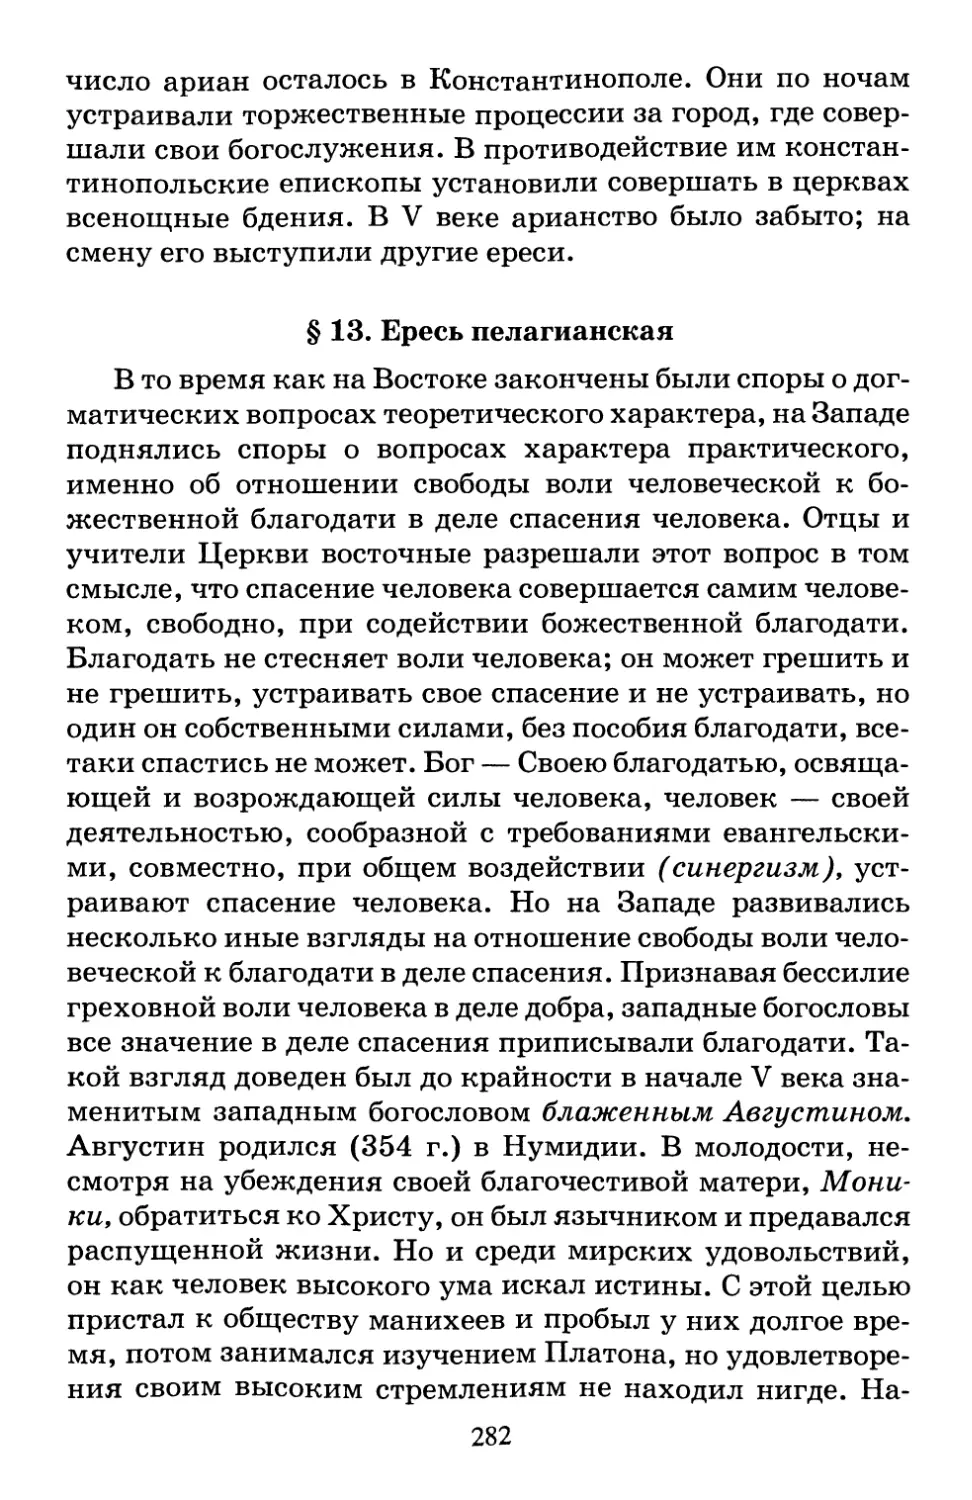 § 13. Ересь пелагианская